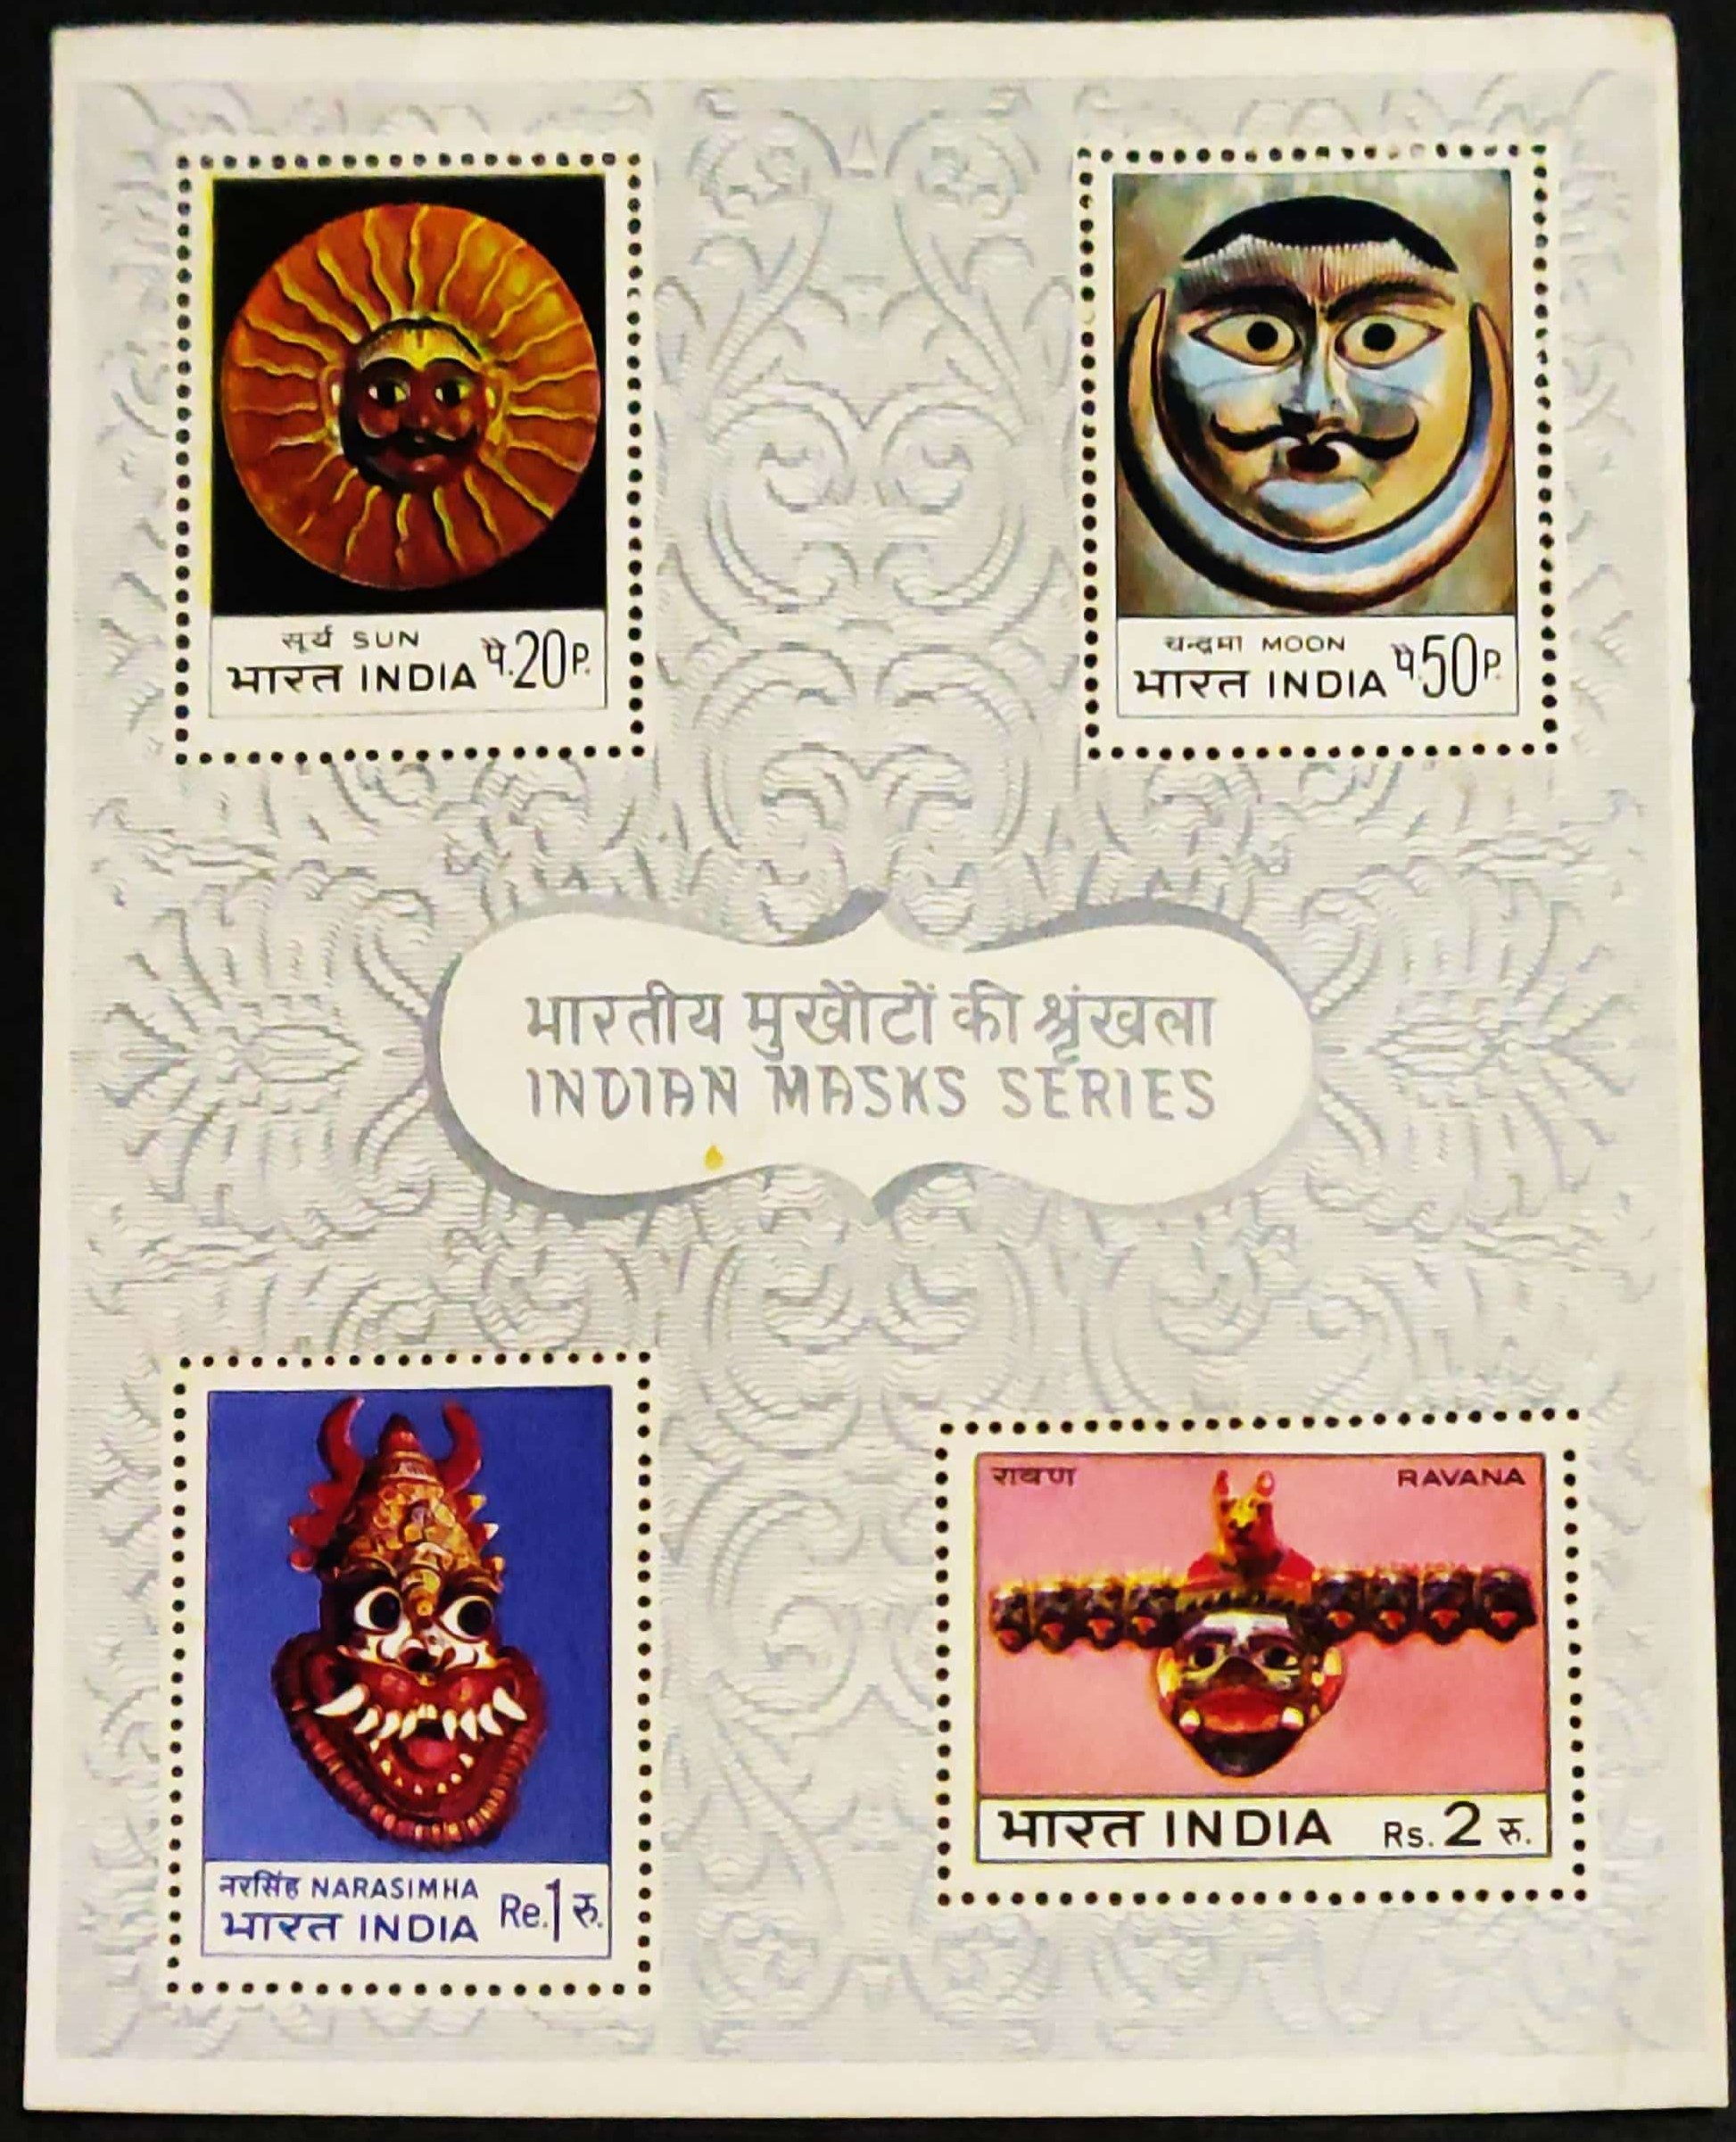 India 1974 Indian Masks Series Miniature Sheet MNH